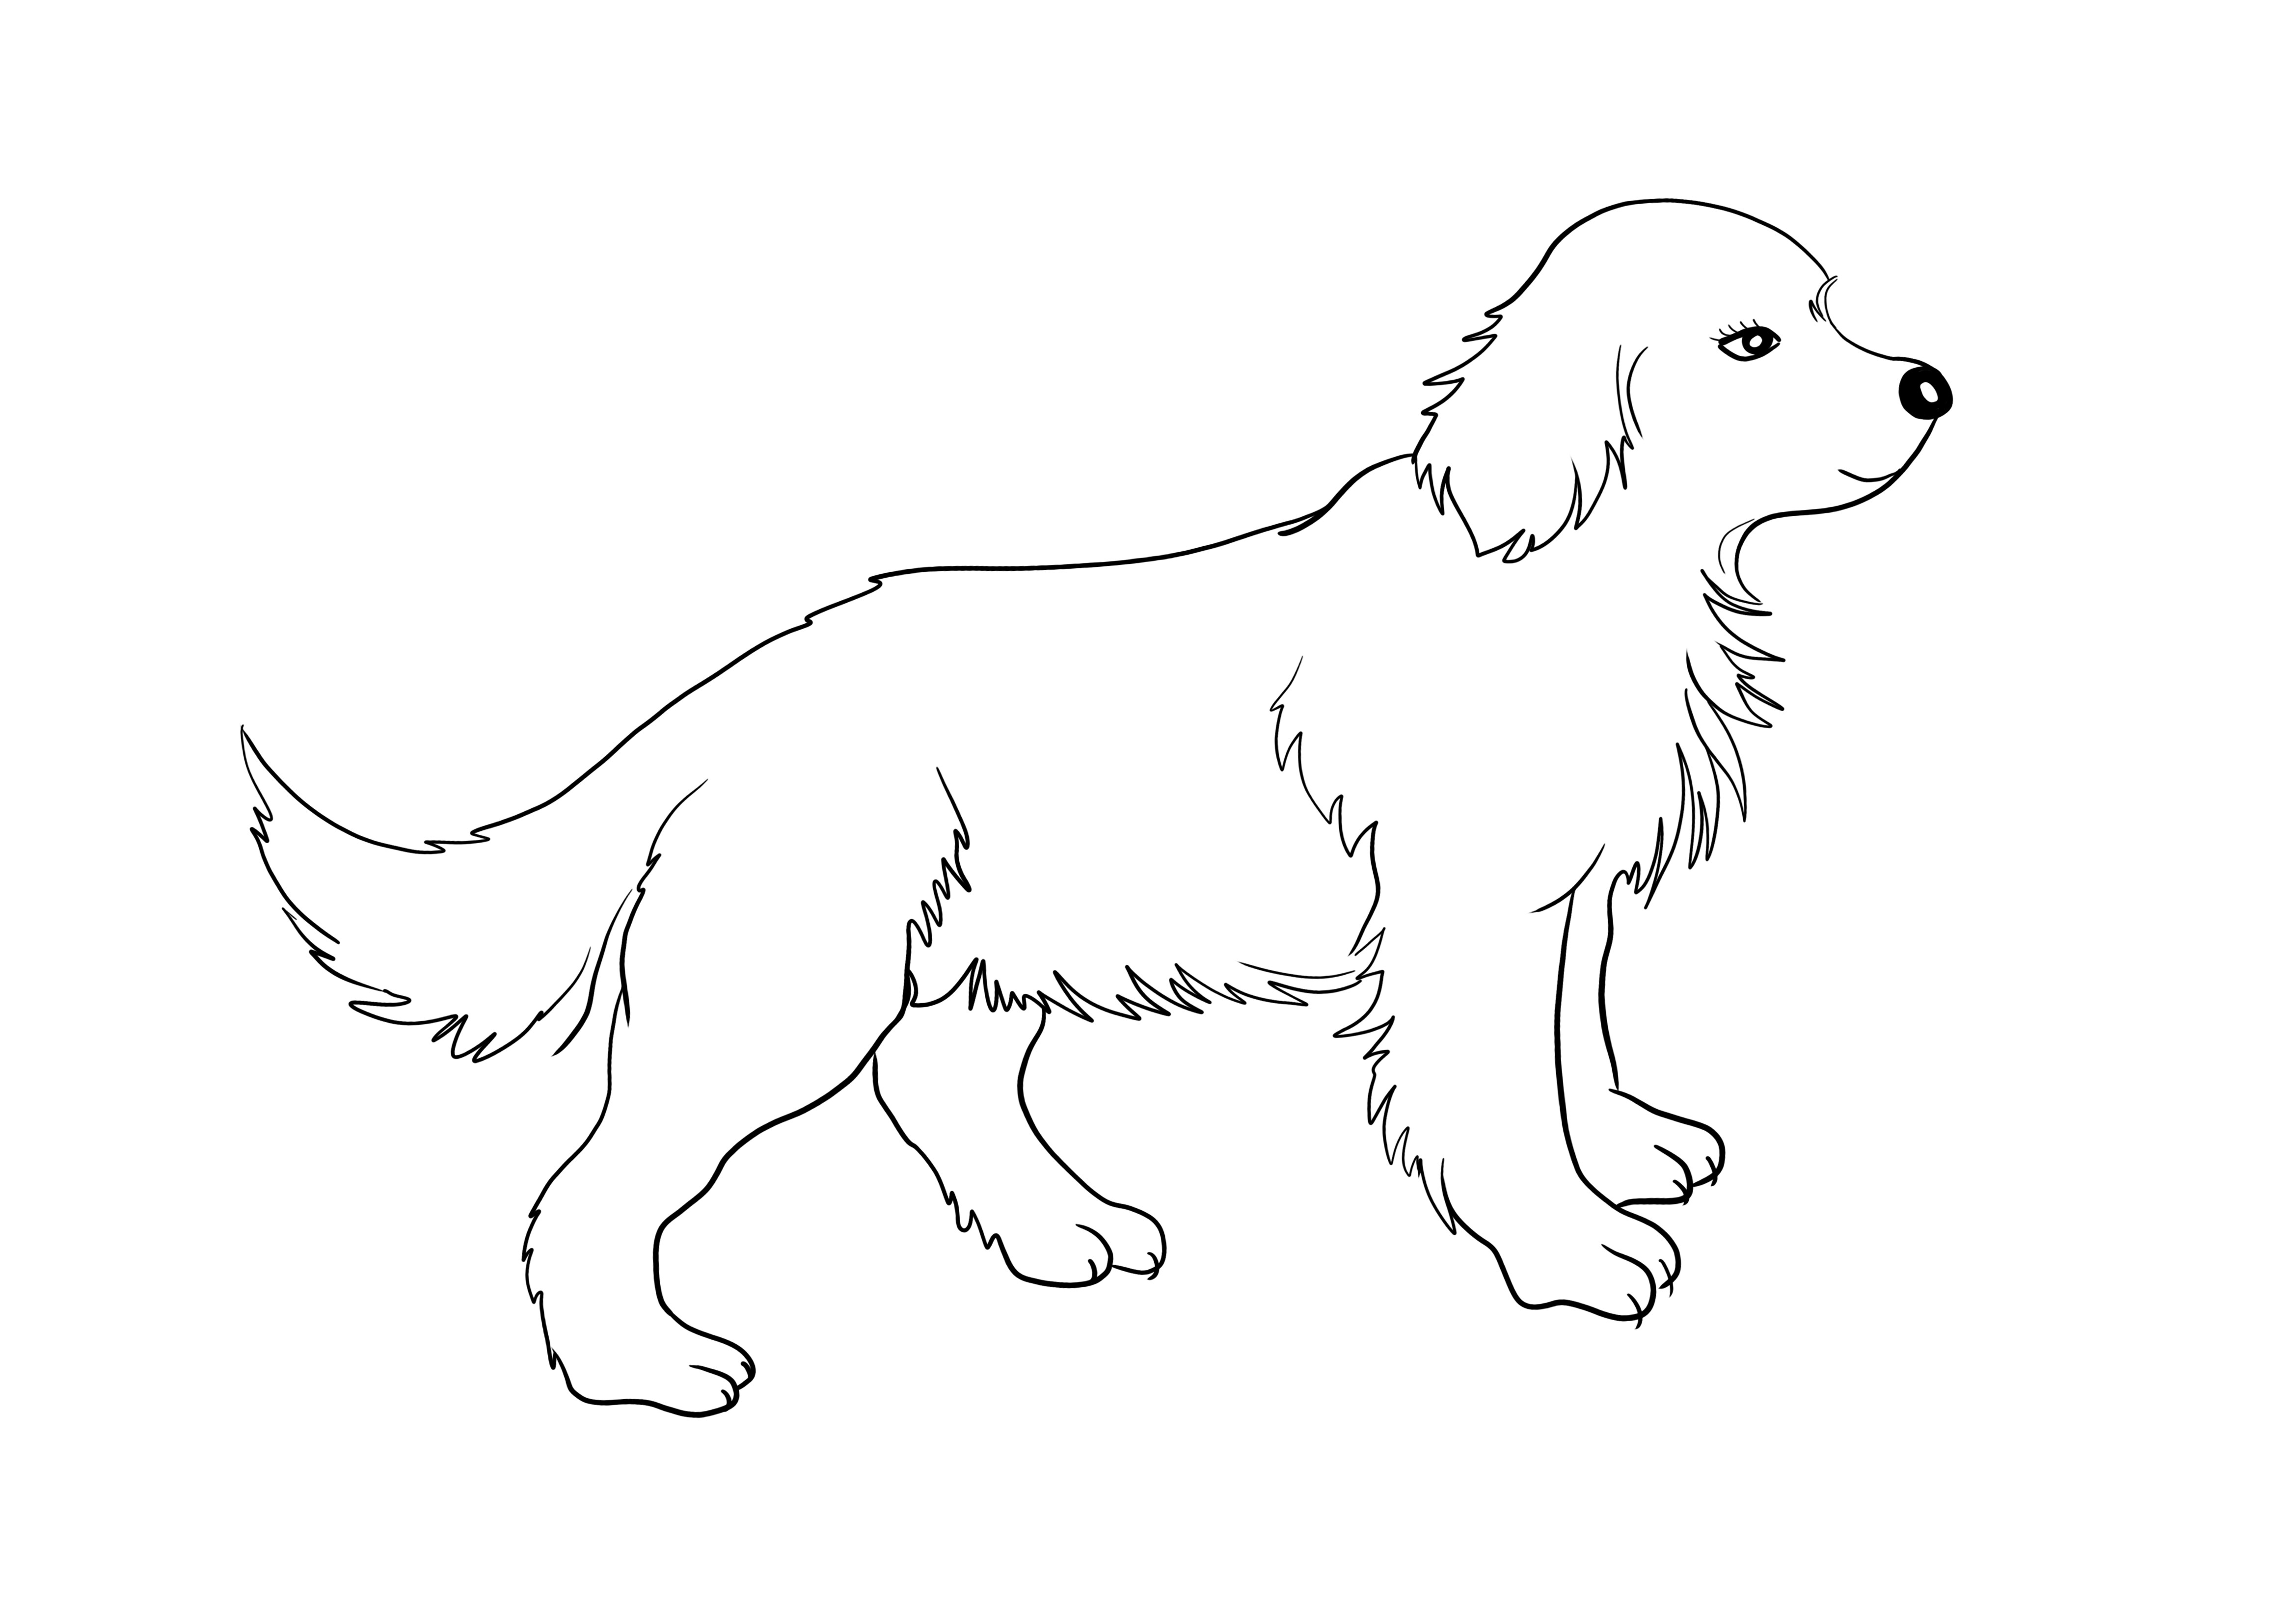 Ücretsiz indirmek ve boyamak için Golden Retriever köpek yavrusu